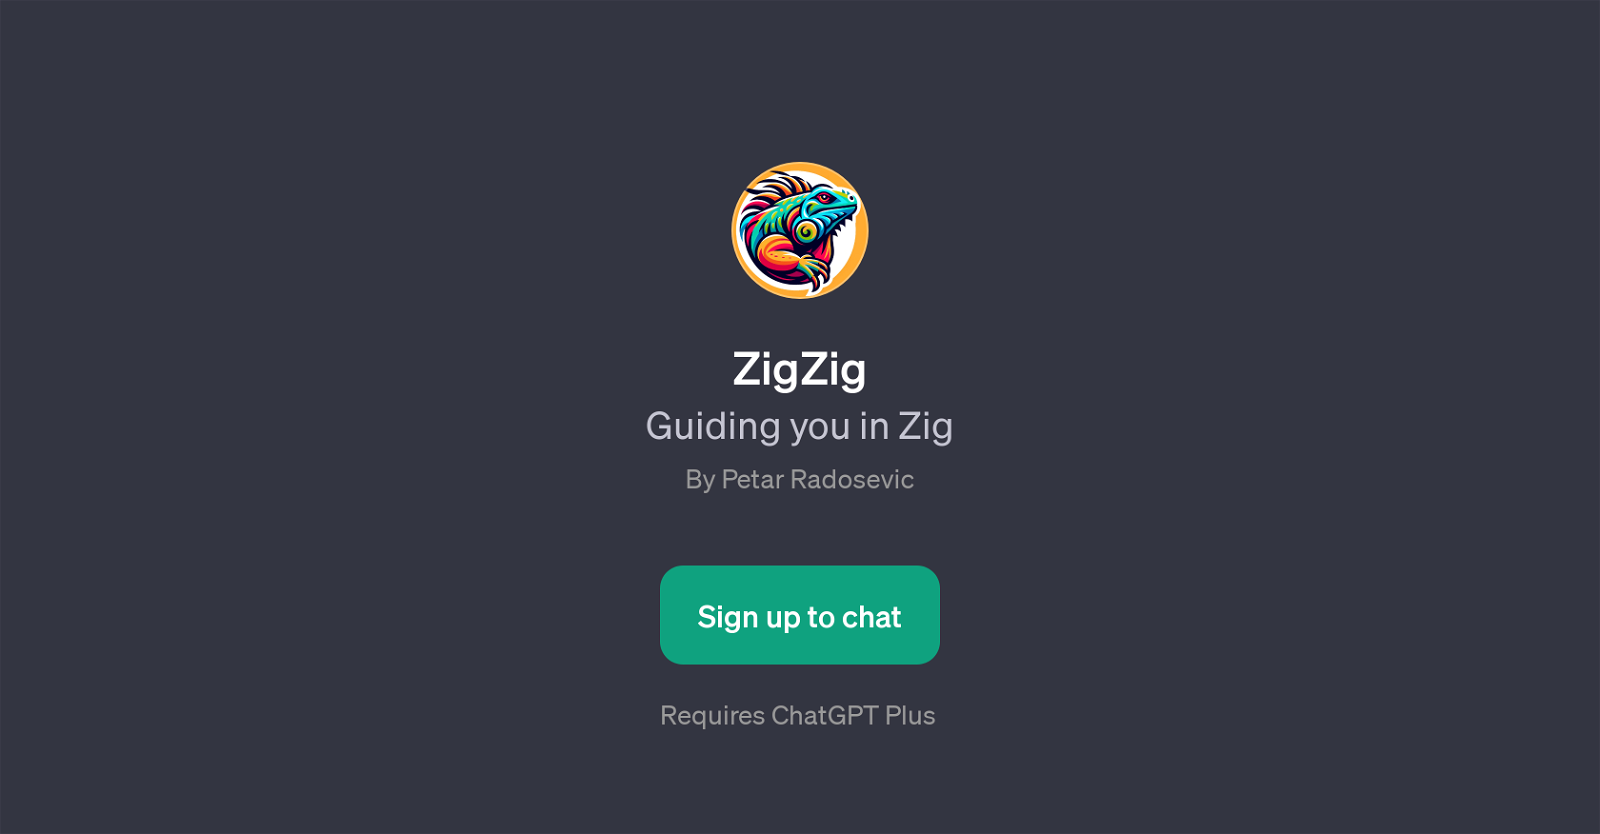 ZigZig website